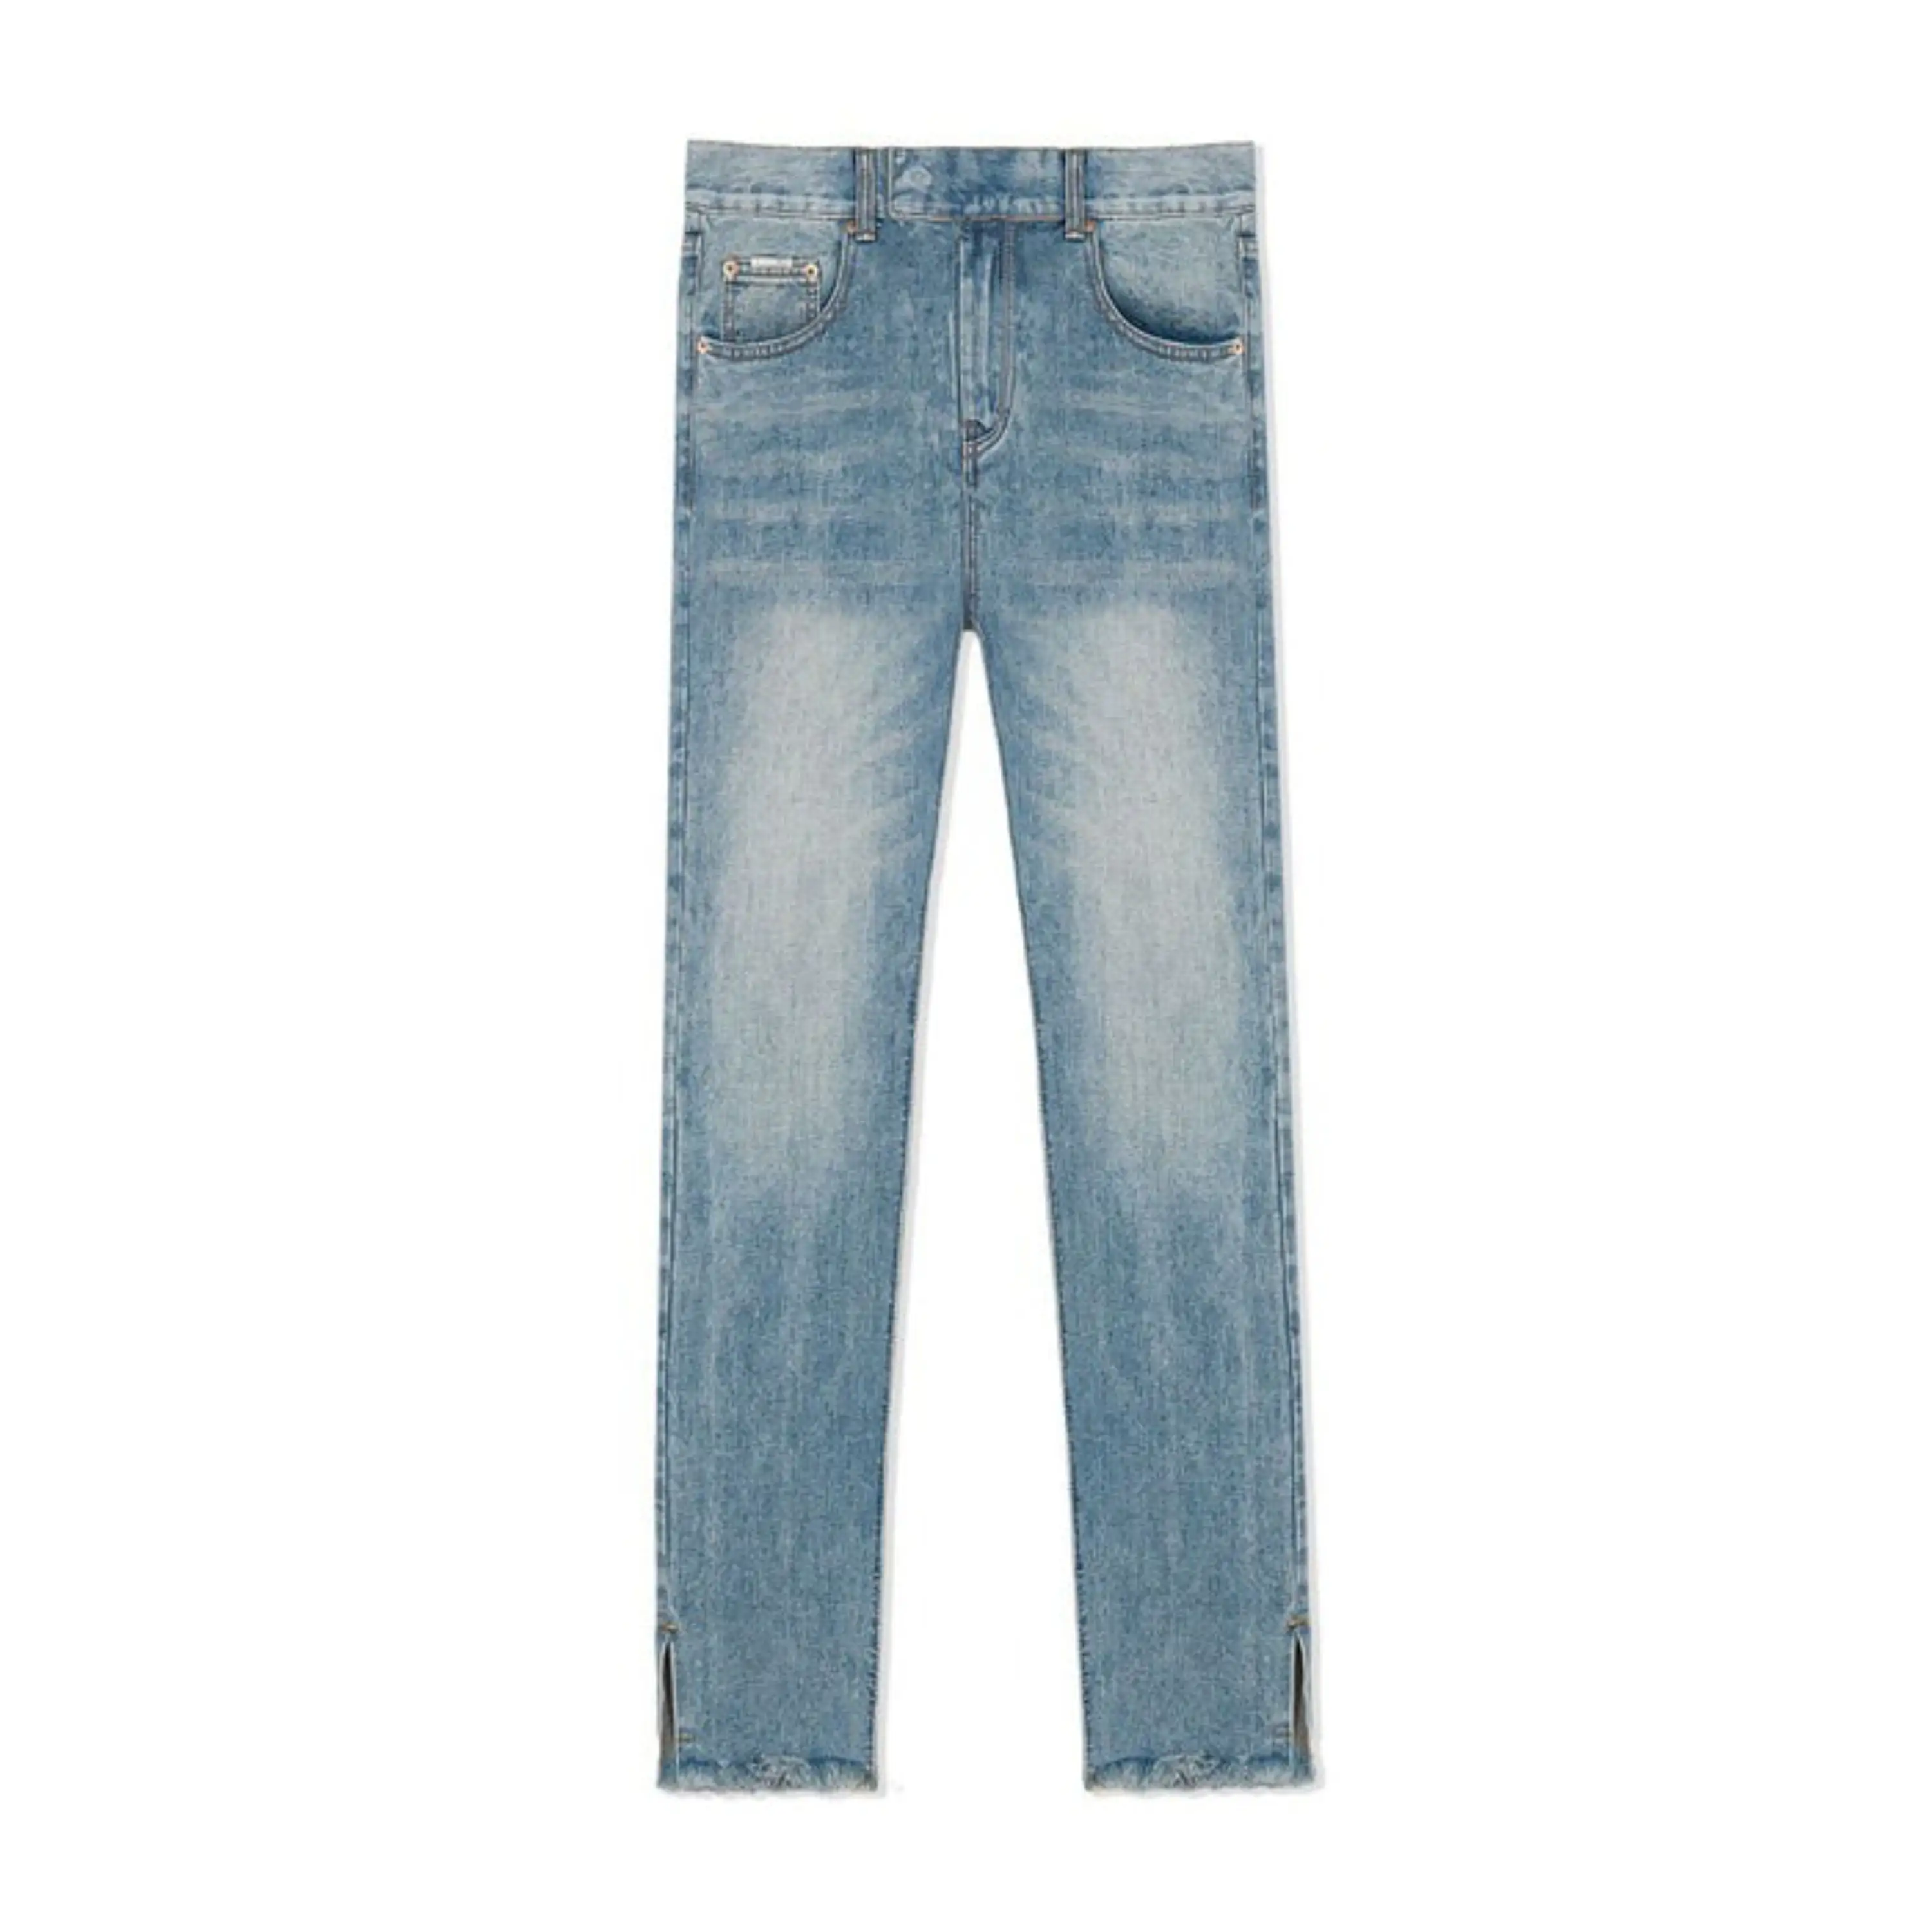 Người Đàn Ông Mới Của Jeans Giản Dị Mặc Chất Lượng Tốt Nhất Jeans Thiết Kế Thời Trang Rắn Skinny Ripped Denim Jeans